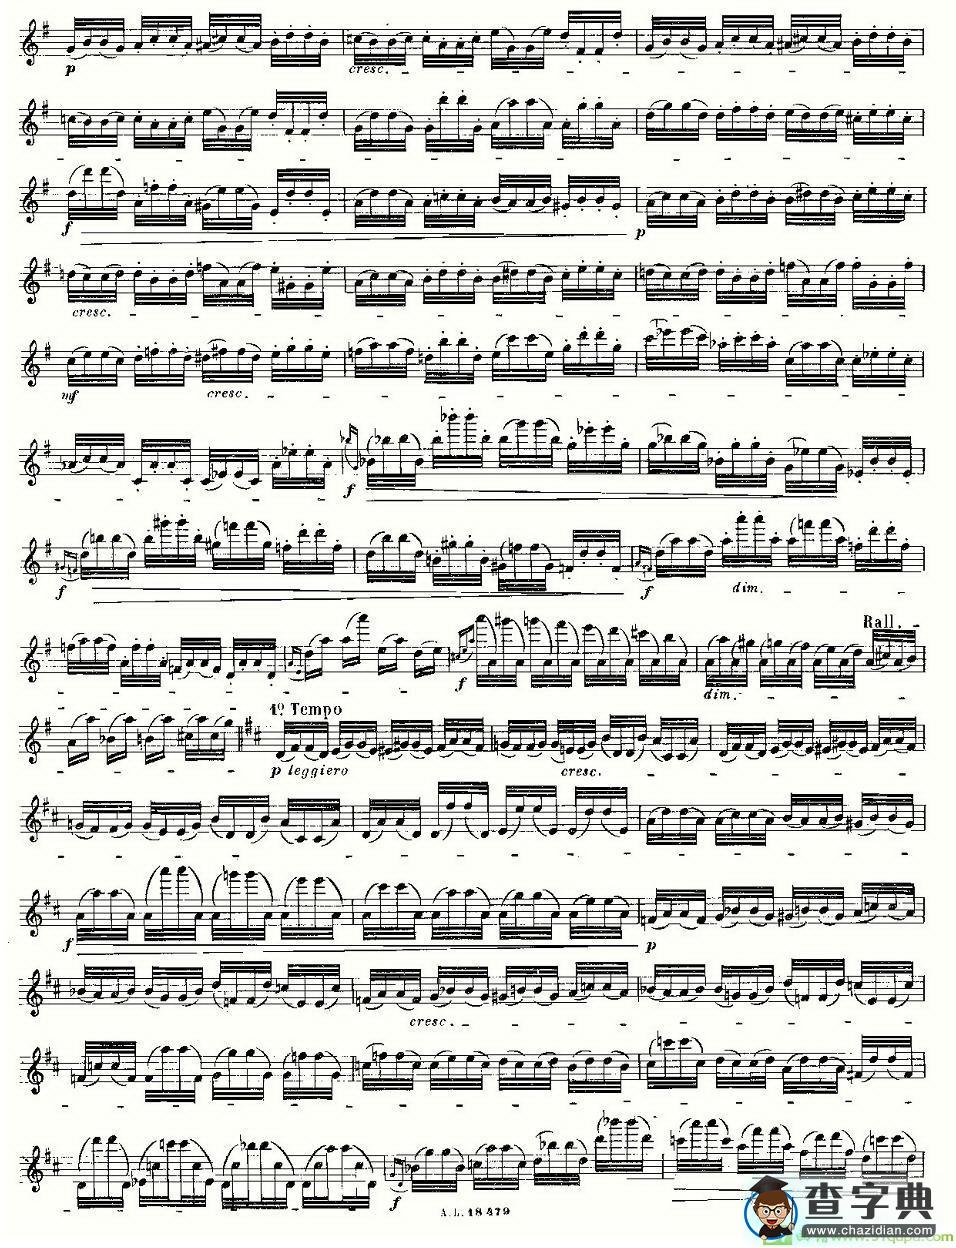 基于维尼亚夫斯基练习曲的10首长笛练习曲之8长笛谱(莫伊斯Moyse作曲)